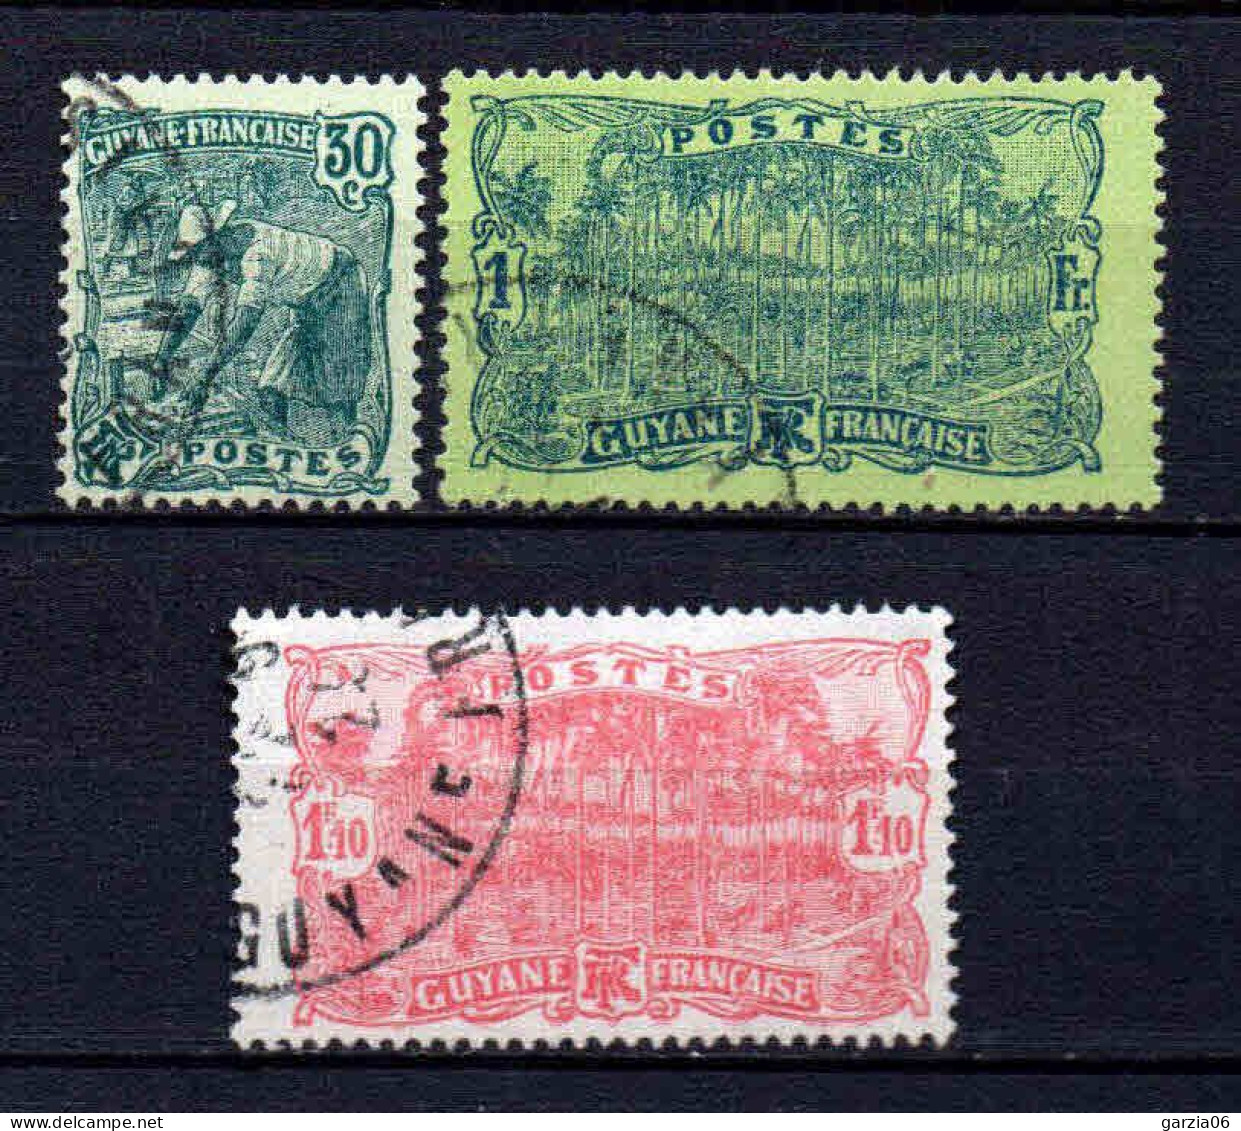 Guyane - 1928 - Tb Antérieur Nouvelles Valeurs   -  N° 106 à 108  - Oblit - Used - Oblitérés